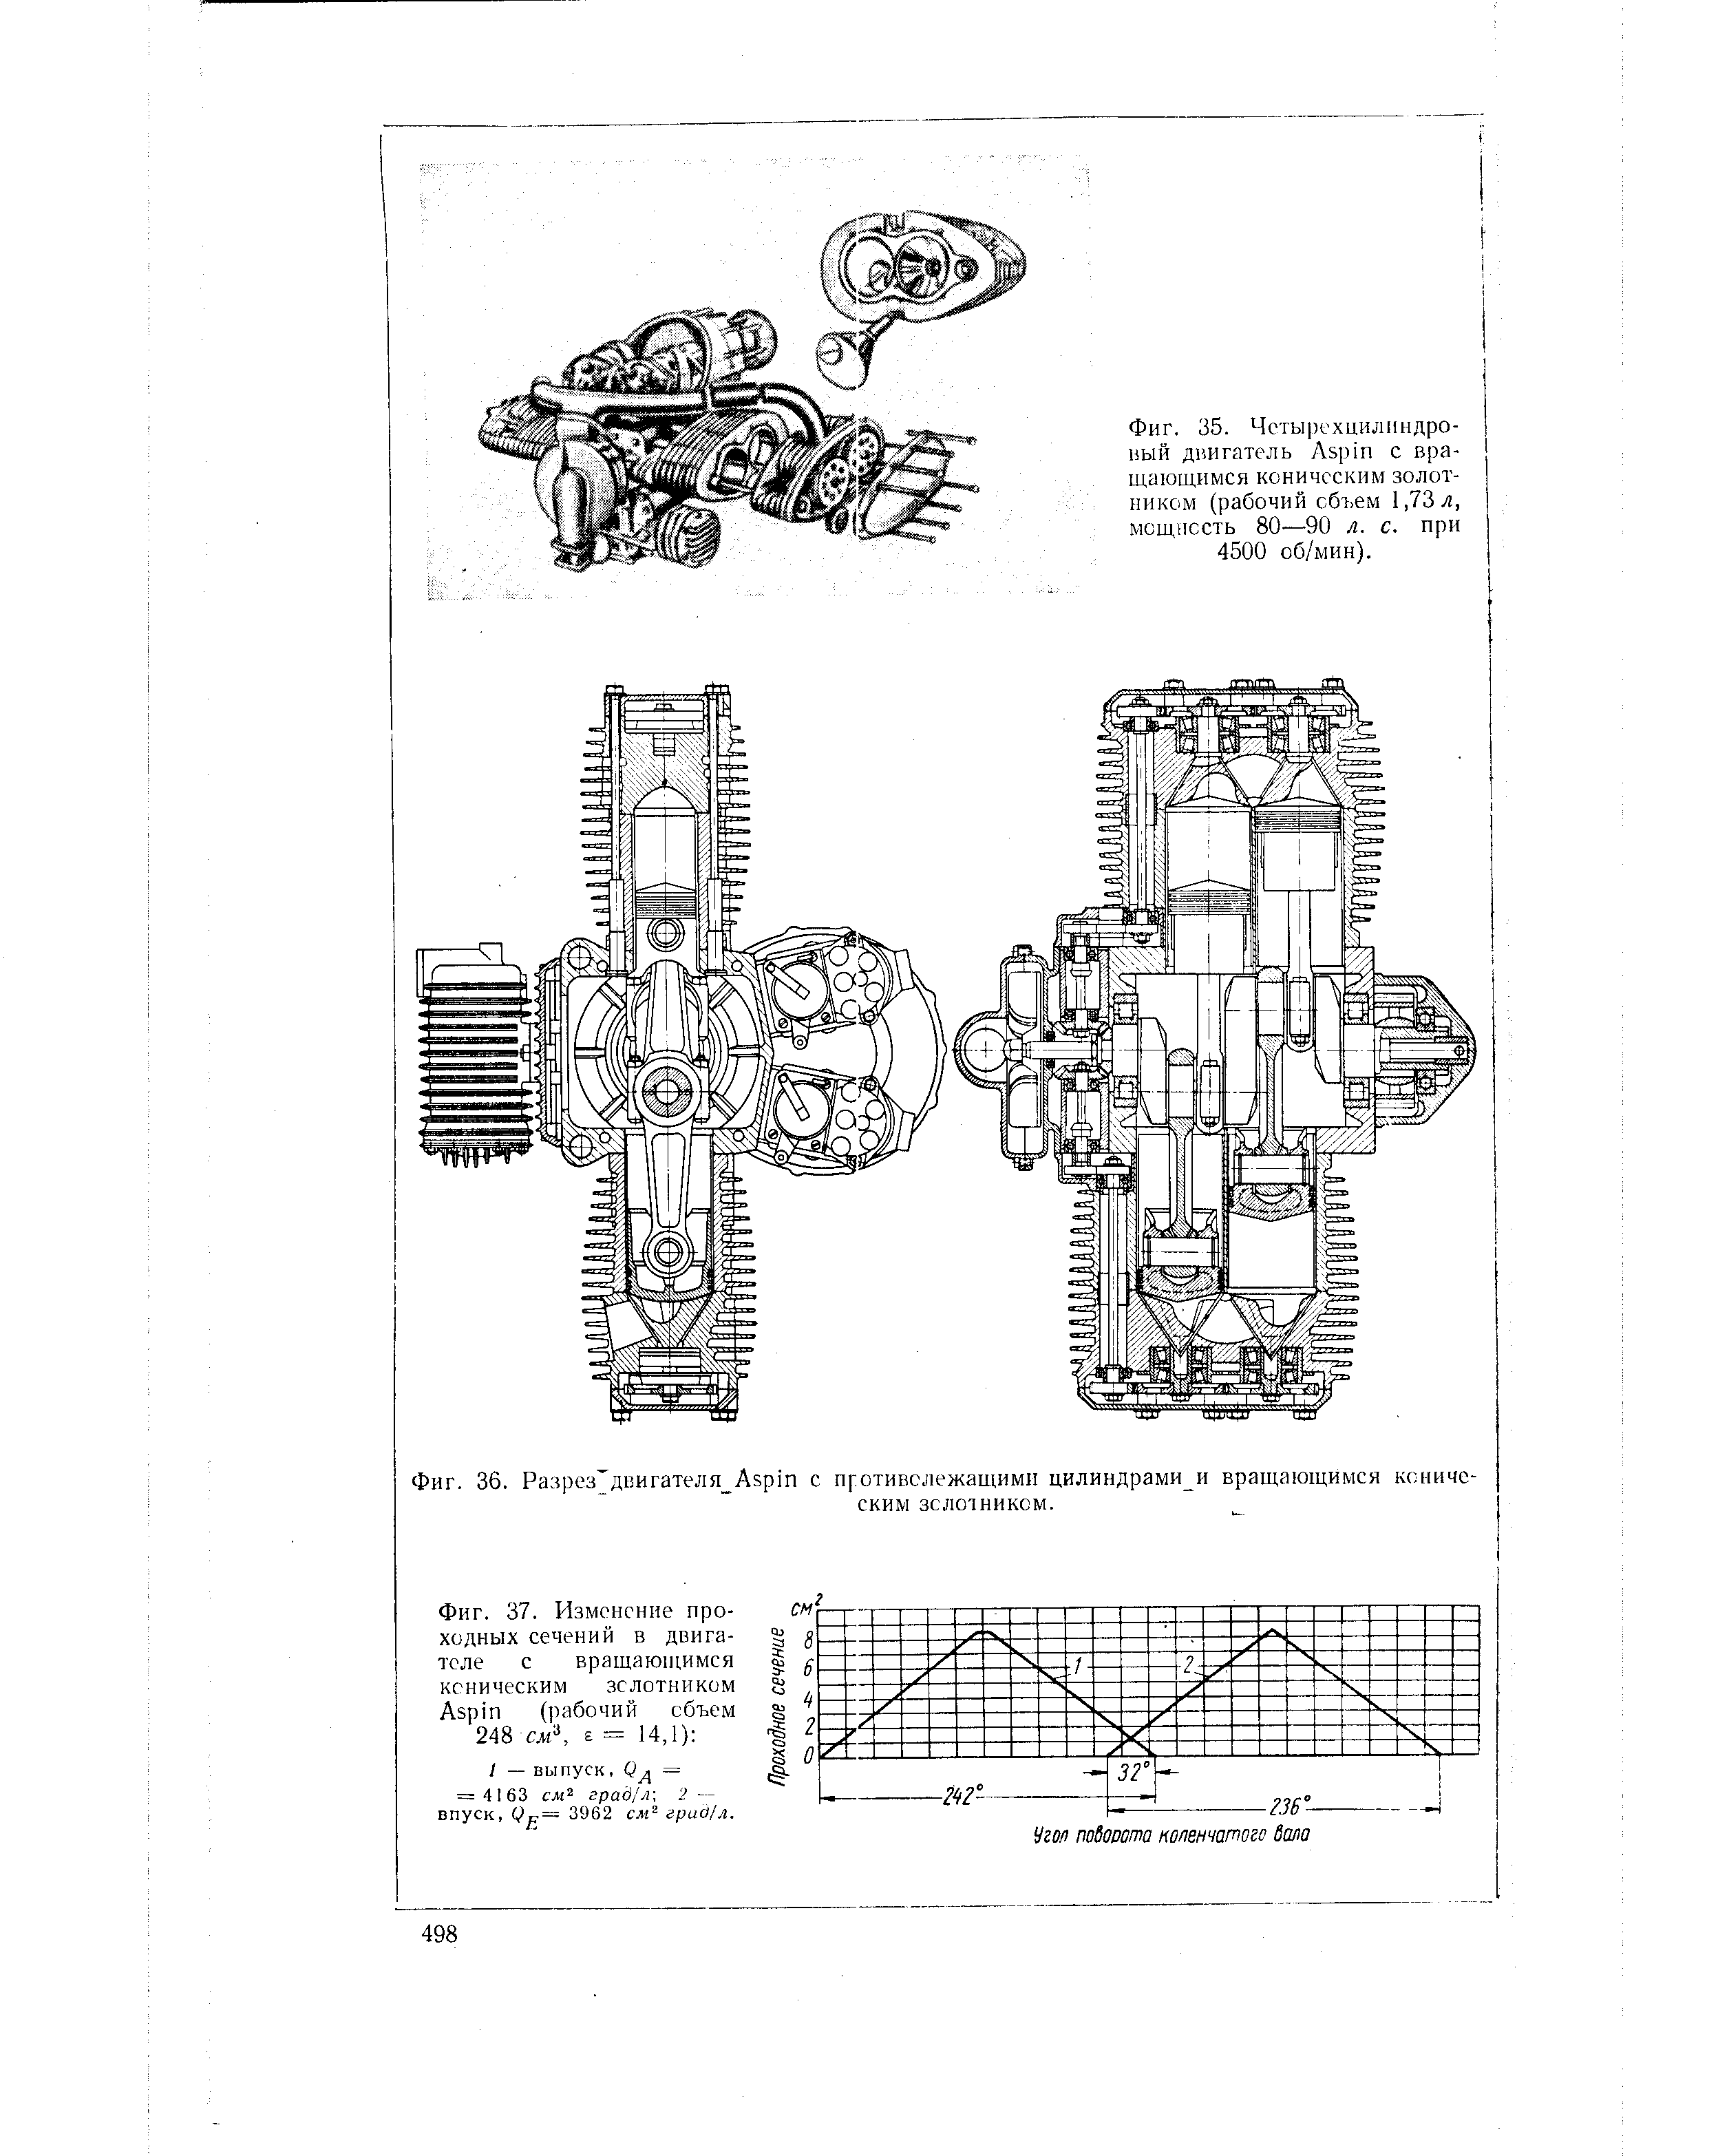 Фиг. 37. Изменение проходных сечений в двигателе с вращающимся коническим золотником Aspin (рабочий сбъем 248 л е = 14,1) 
